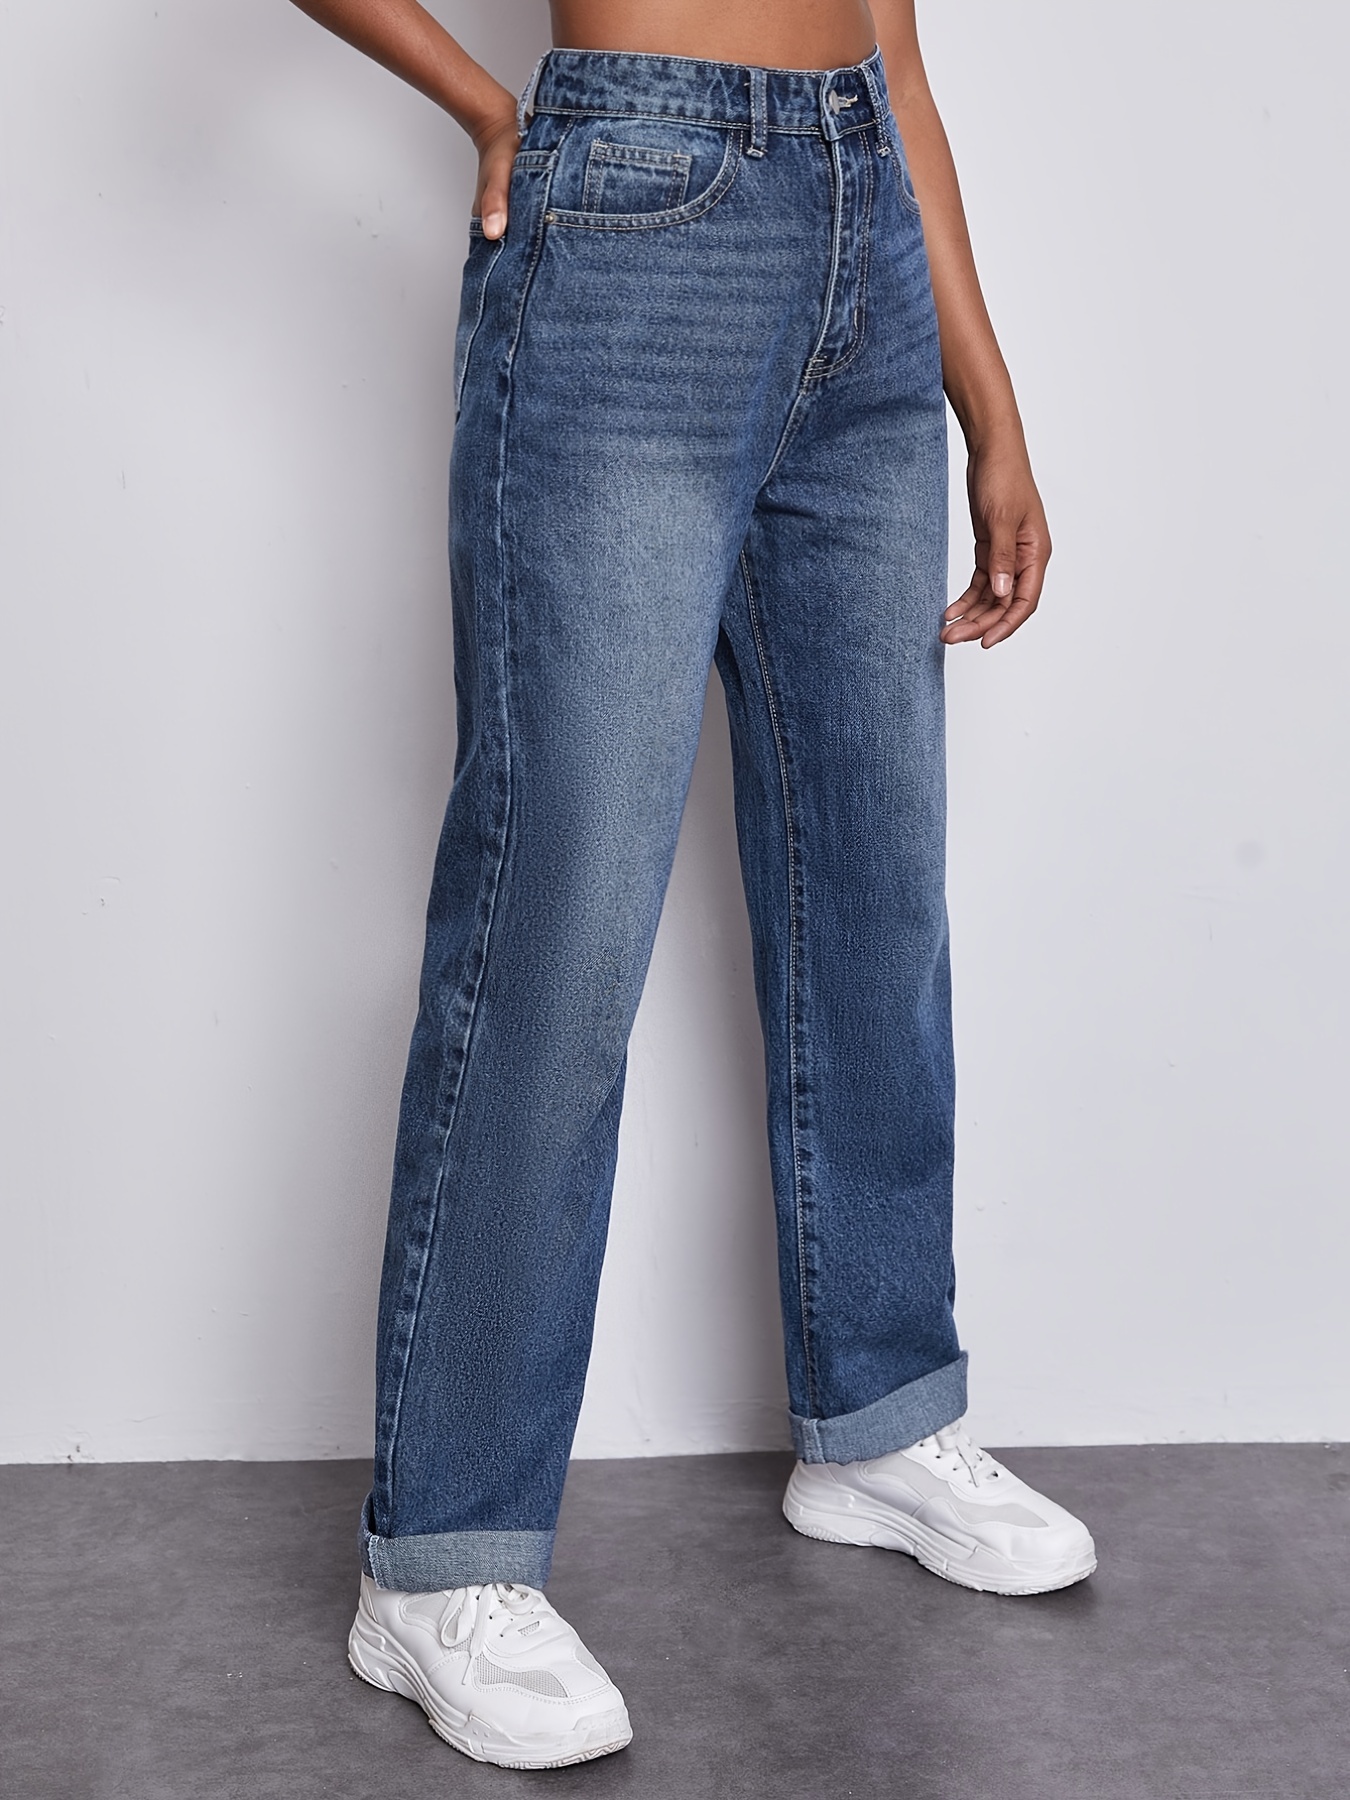 Jeans rectos de cintura alta * oscuro, pantalones de mezclilla holgados de  tiro alto con bolsillos oblicuos, jeans y ropa de mujer